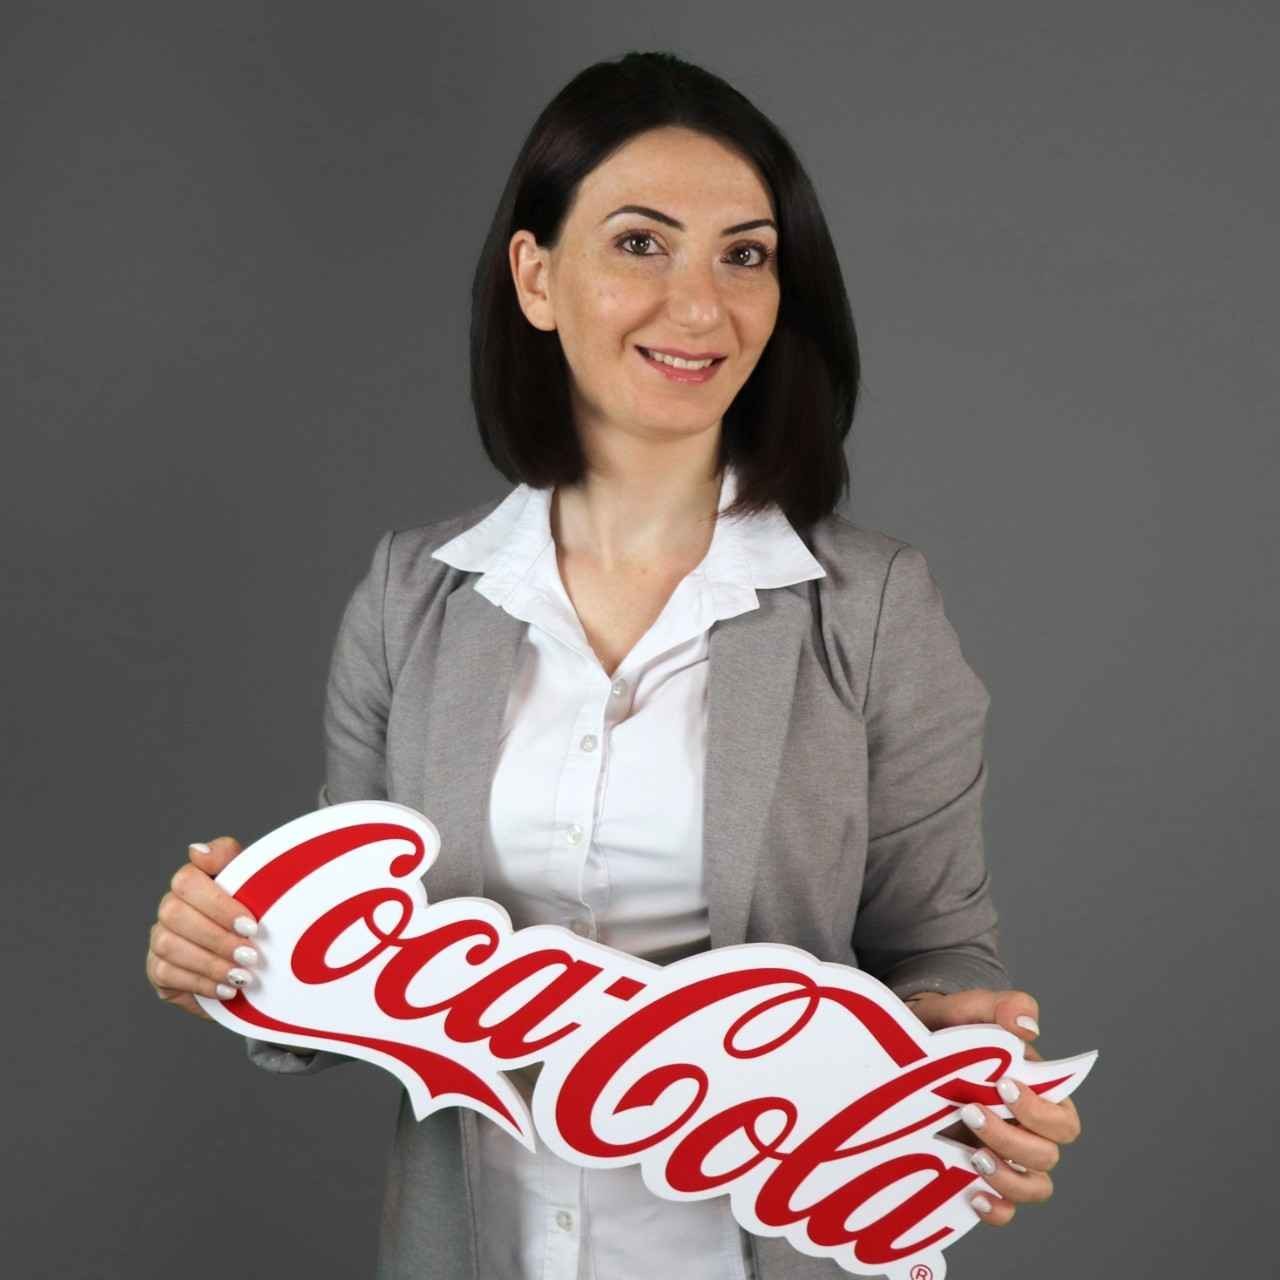 Coca-cola hbc armenia careers_11zon